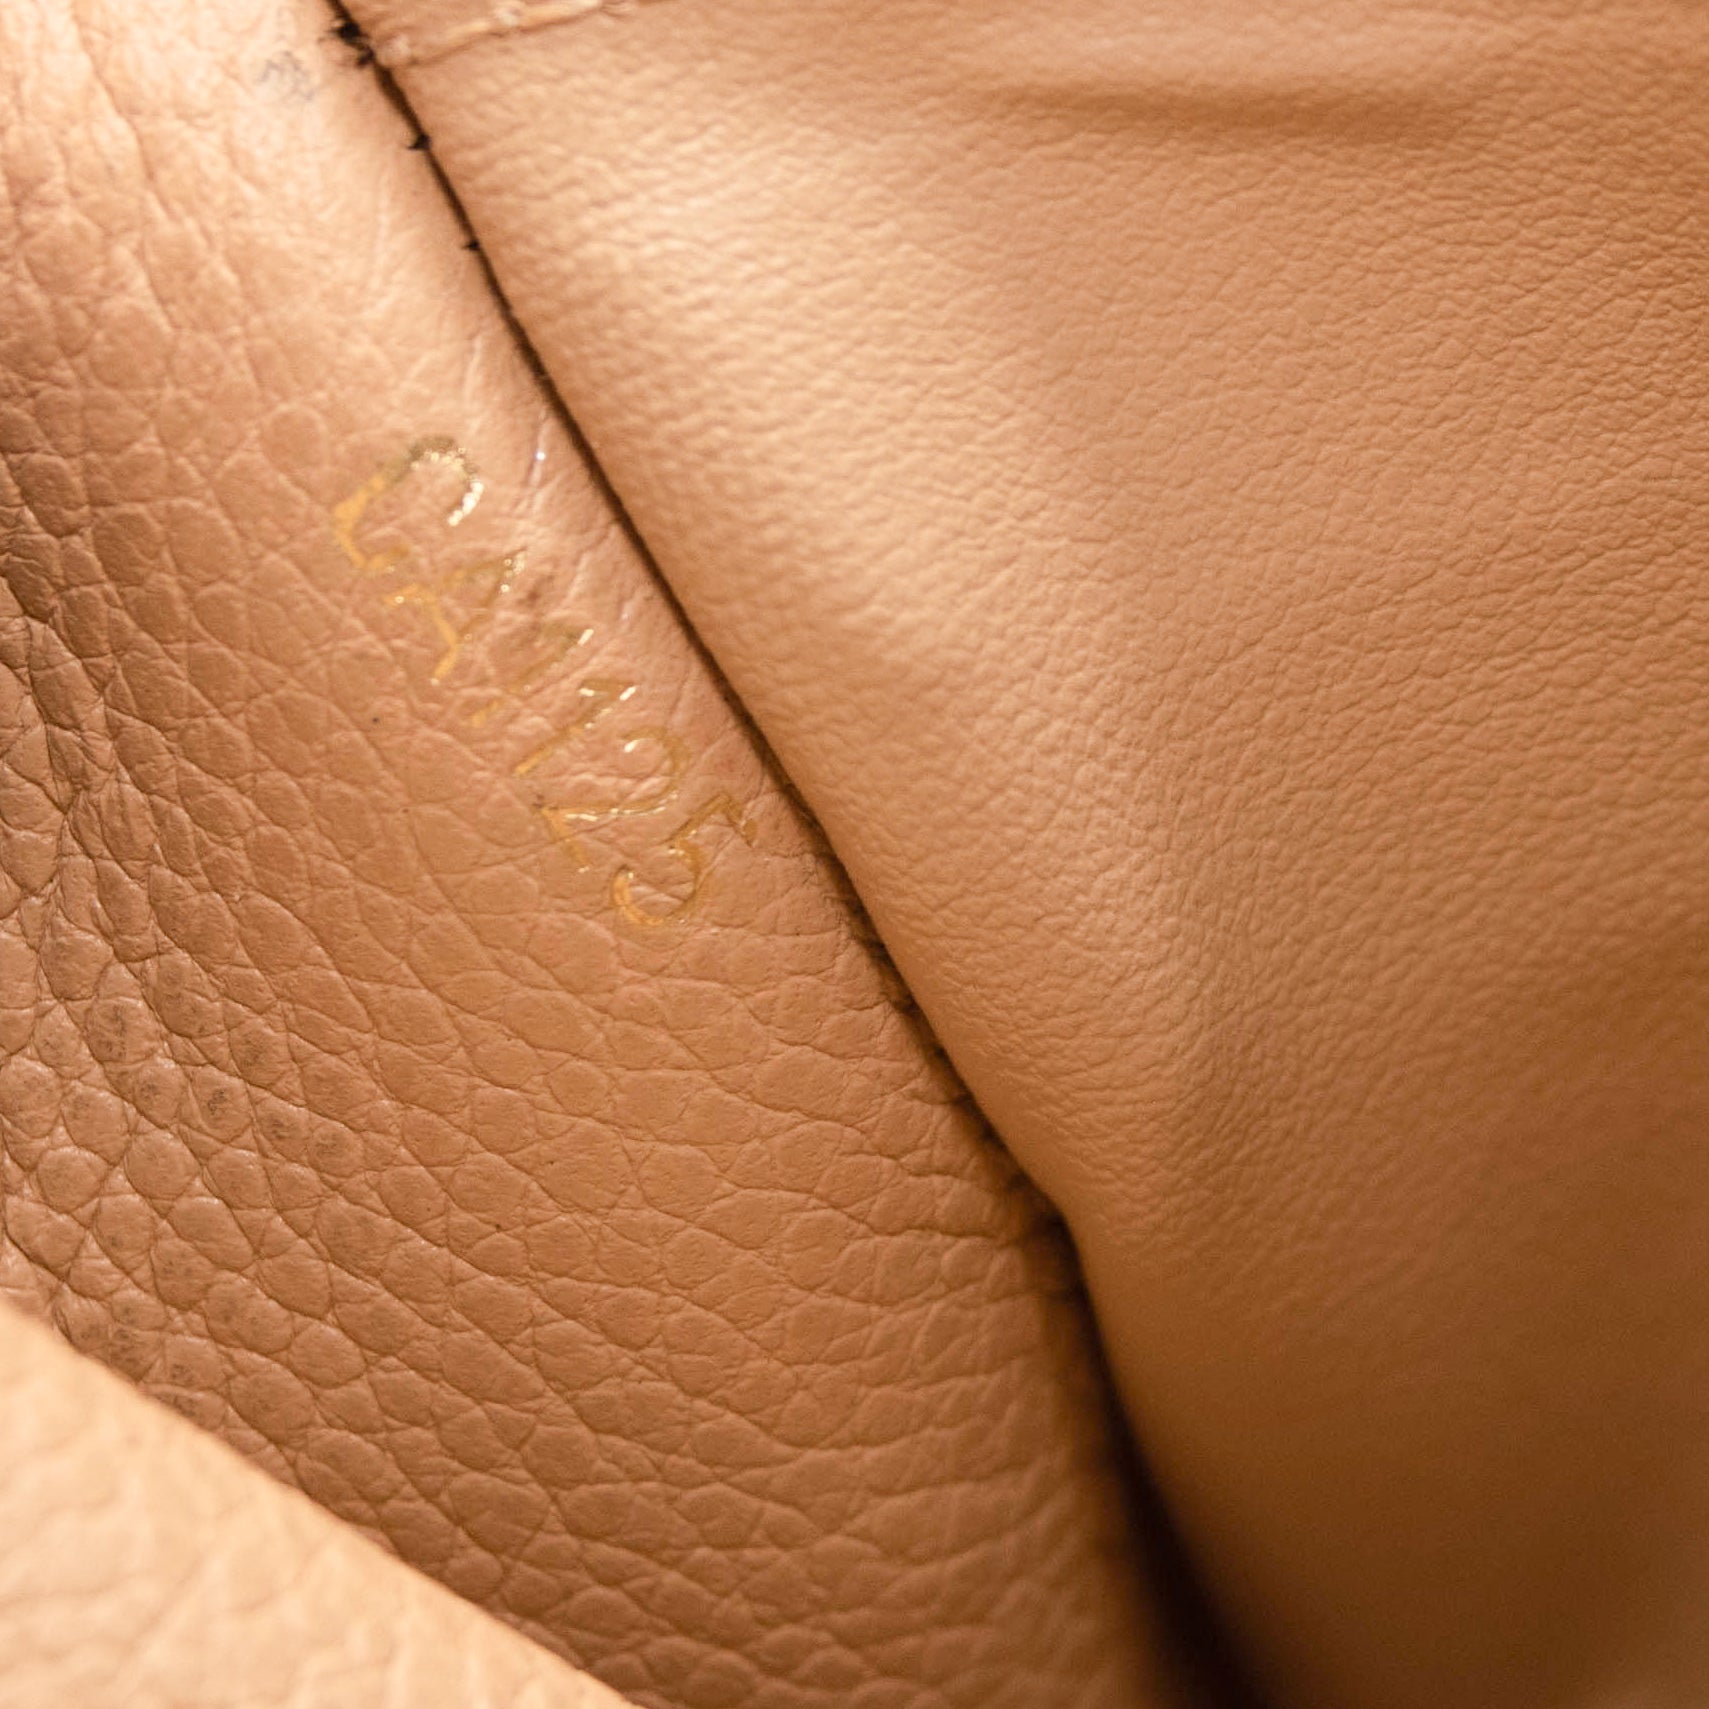 Louis Vuitton Empreinte Curieuse Wallet Dune Beige - MyDesignerly